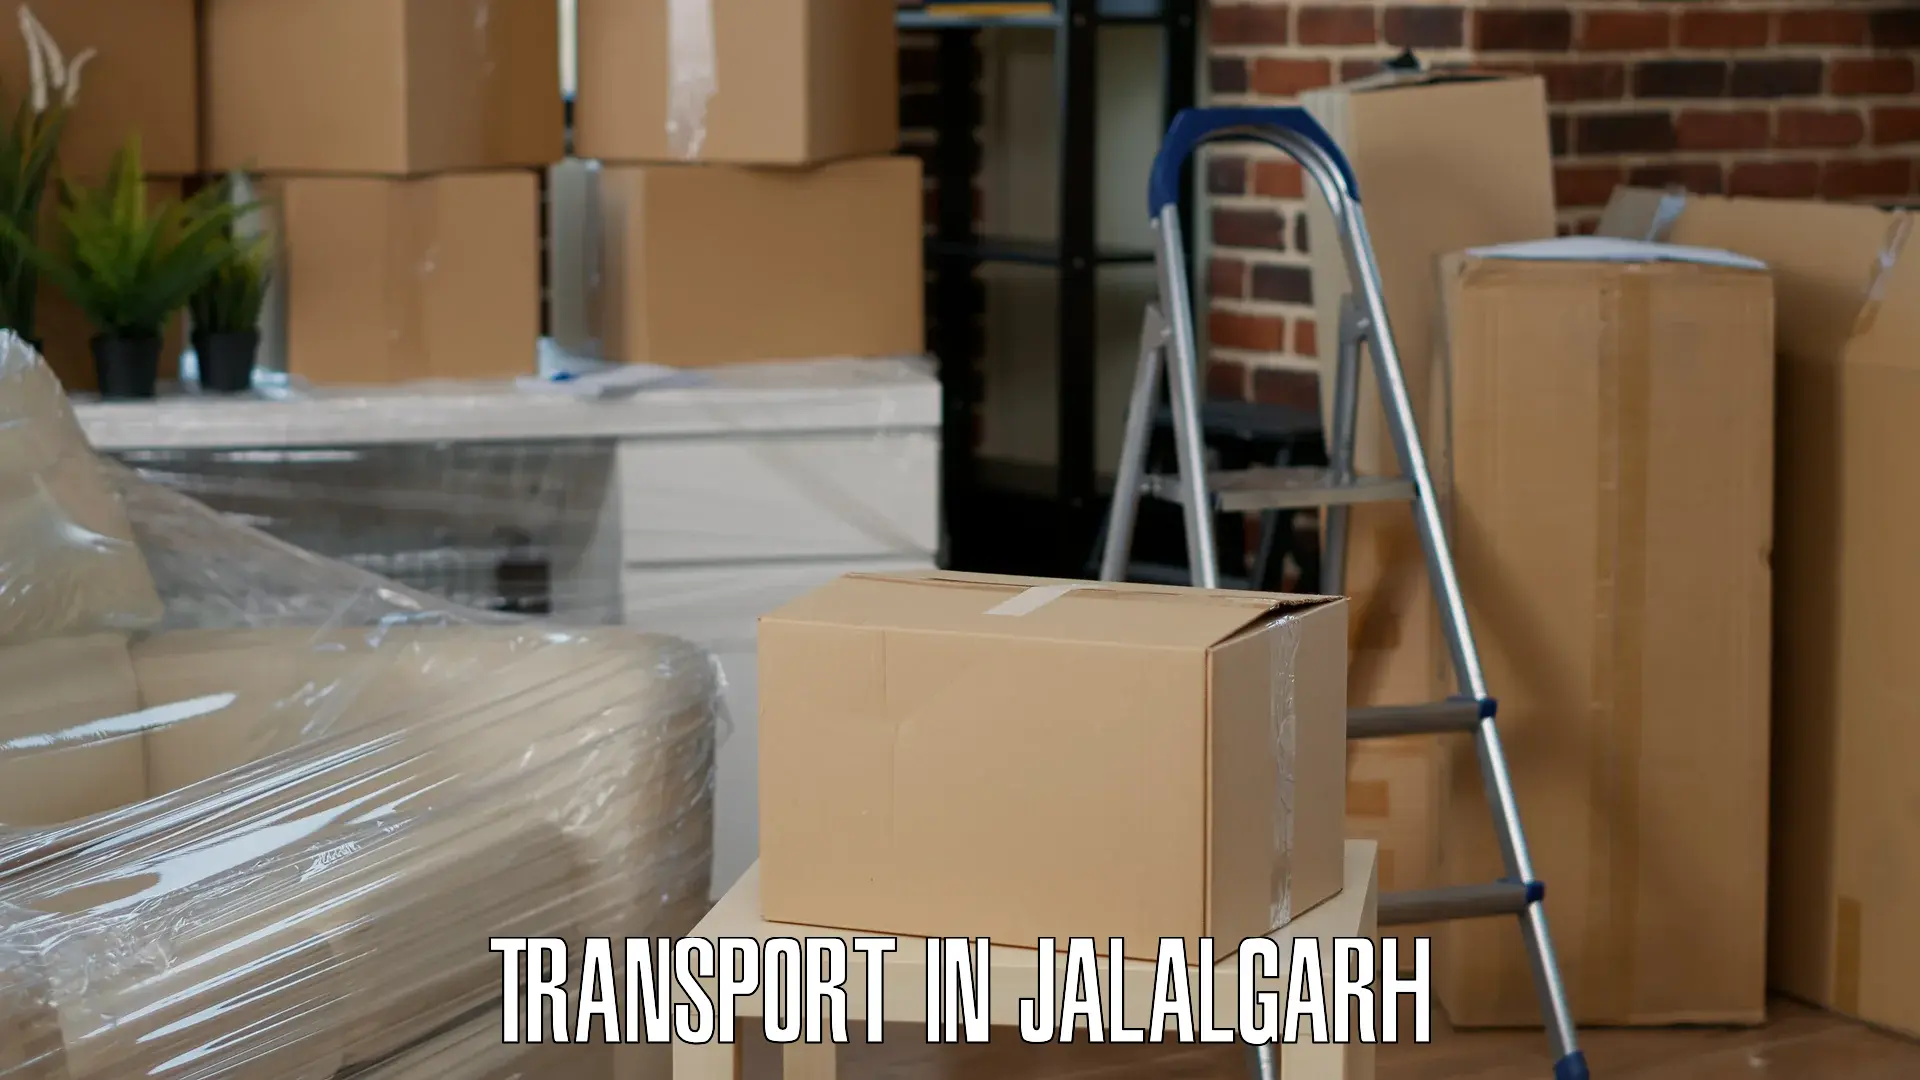 Cargo transportation services in Jalalgarh